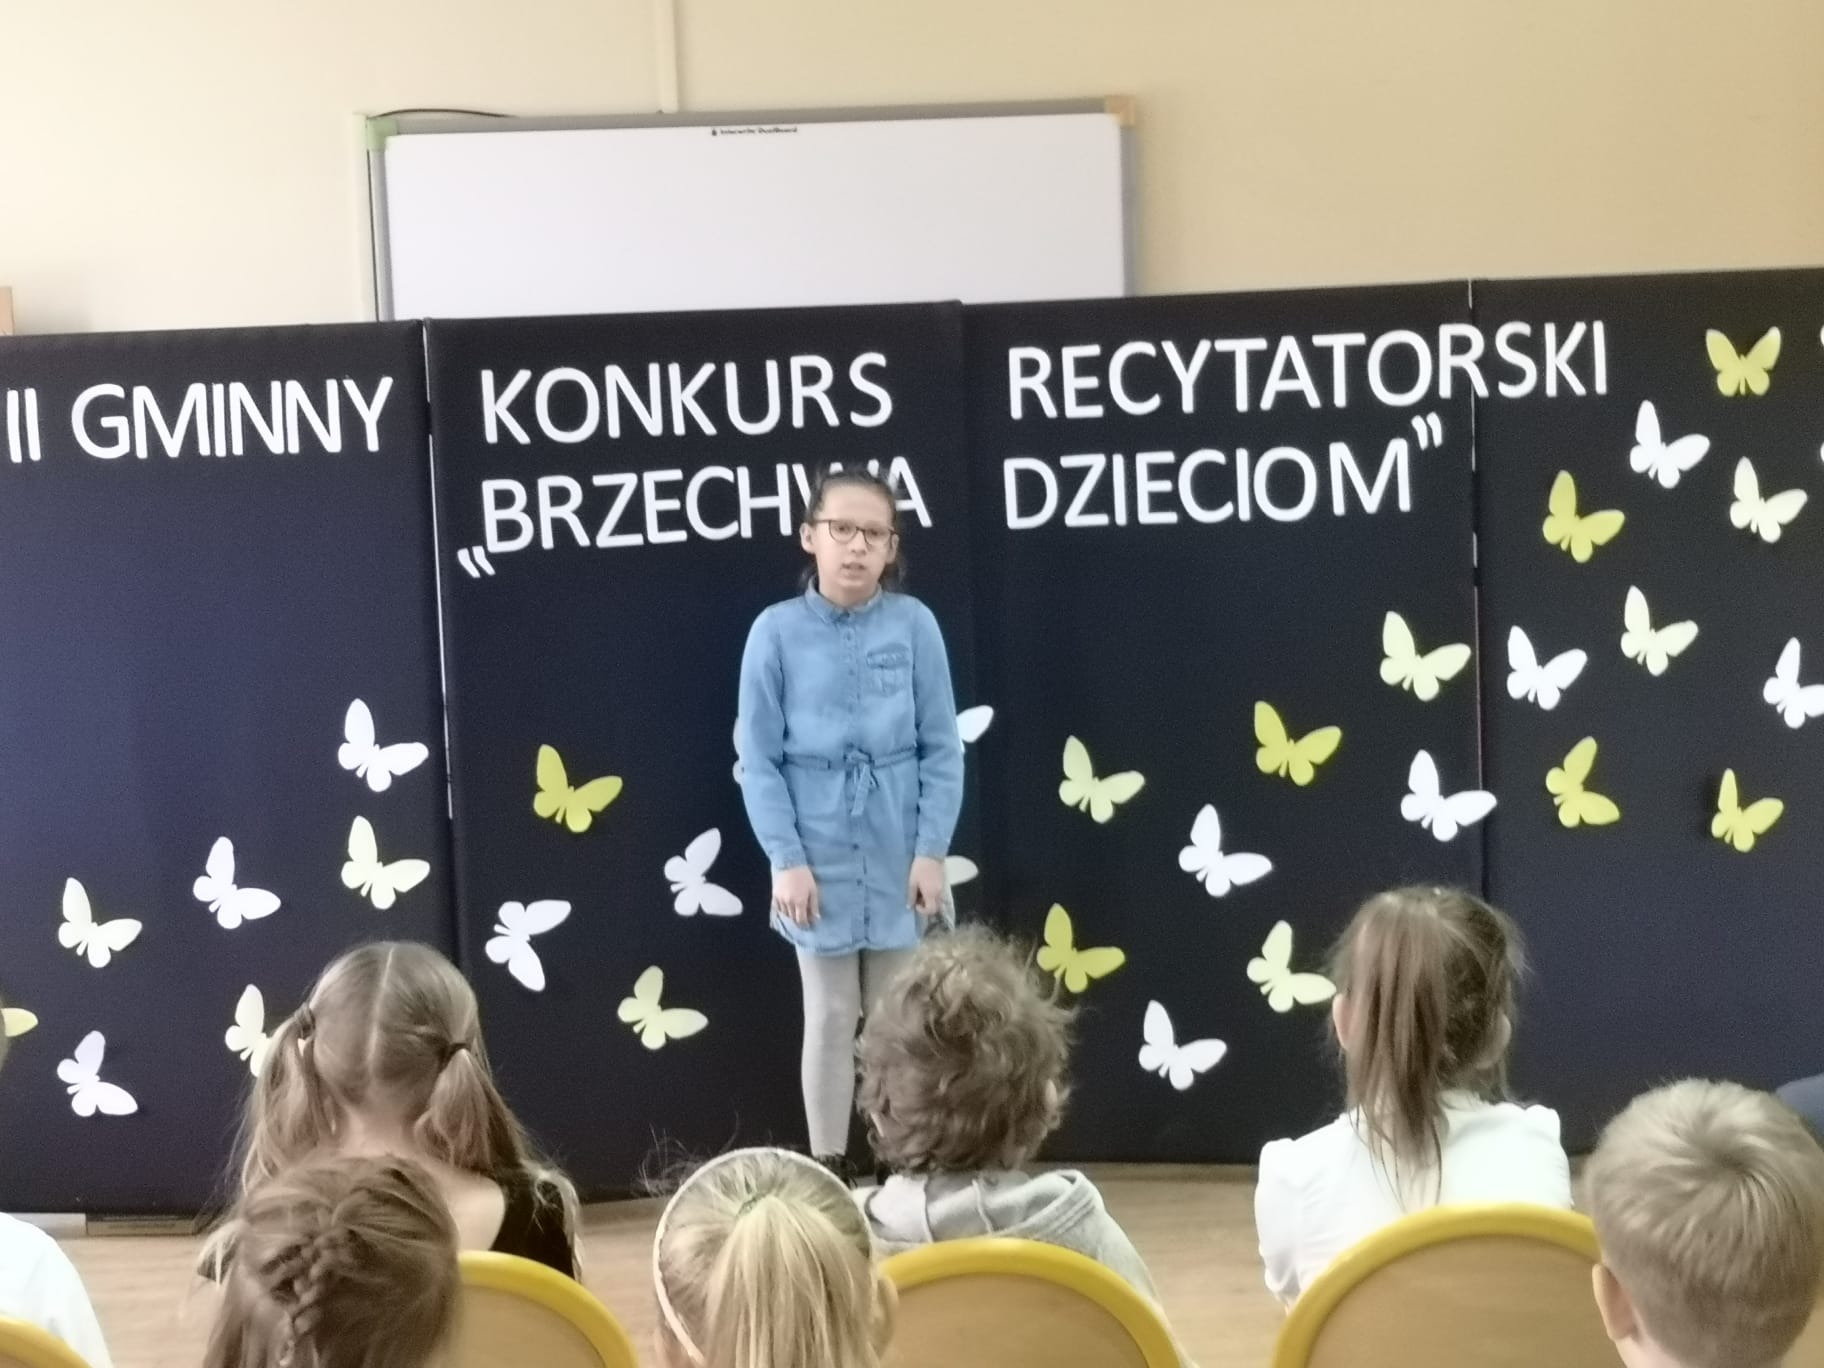 Gminny Konkurs Recytatorski pt. "Brzechwa dzieciom" - Obrazek 6